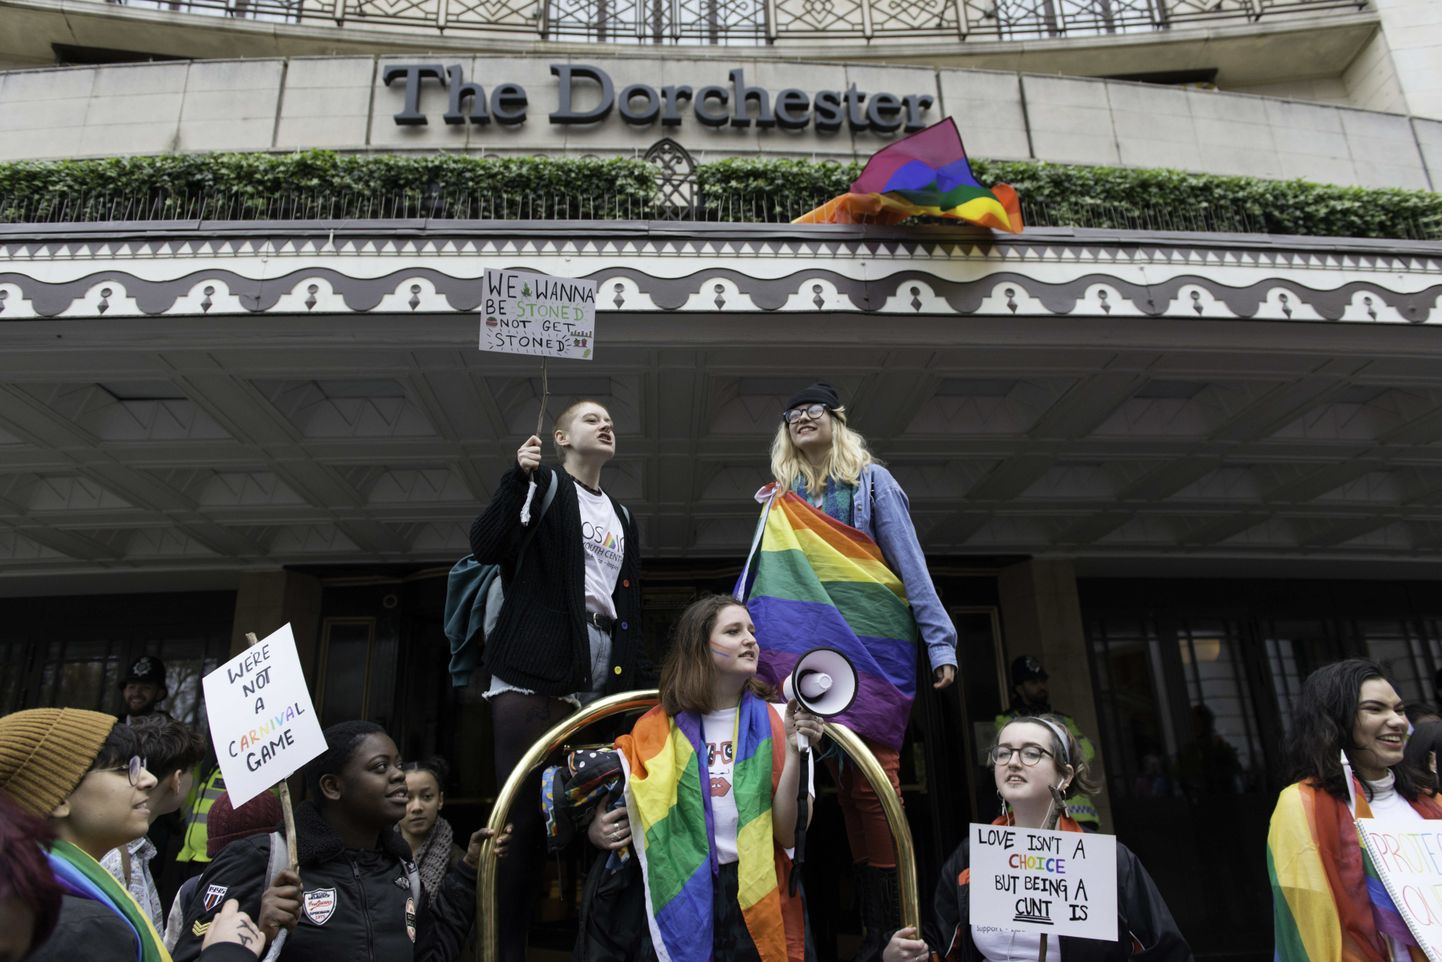 Geiõiguslaste meeleavaldus Brunei kuningriigile kuuluva Dorchesteri hotelli ees Londonis aprilli hakul.